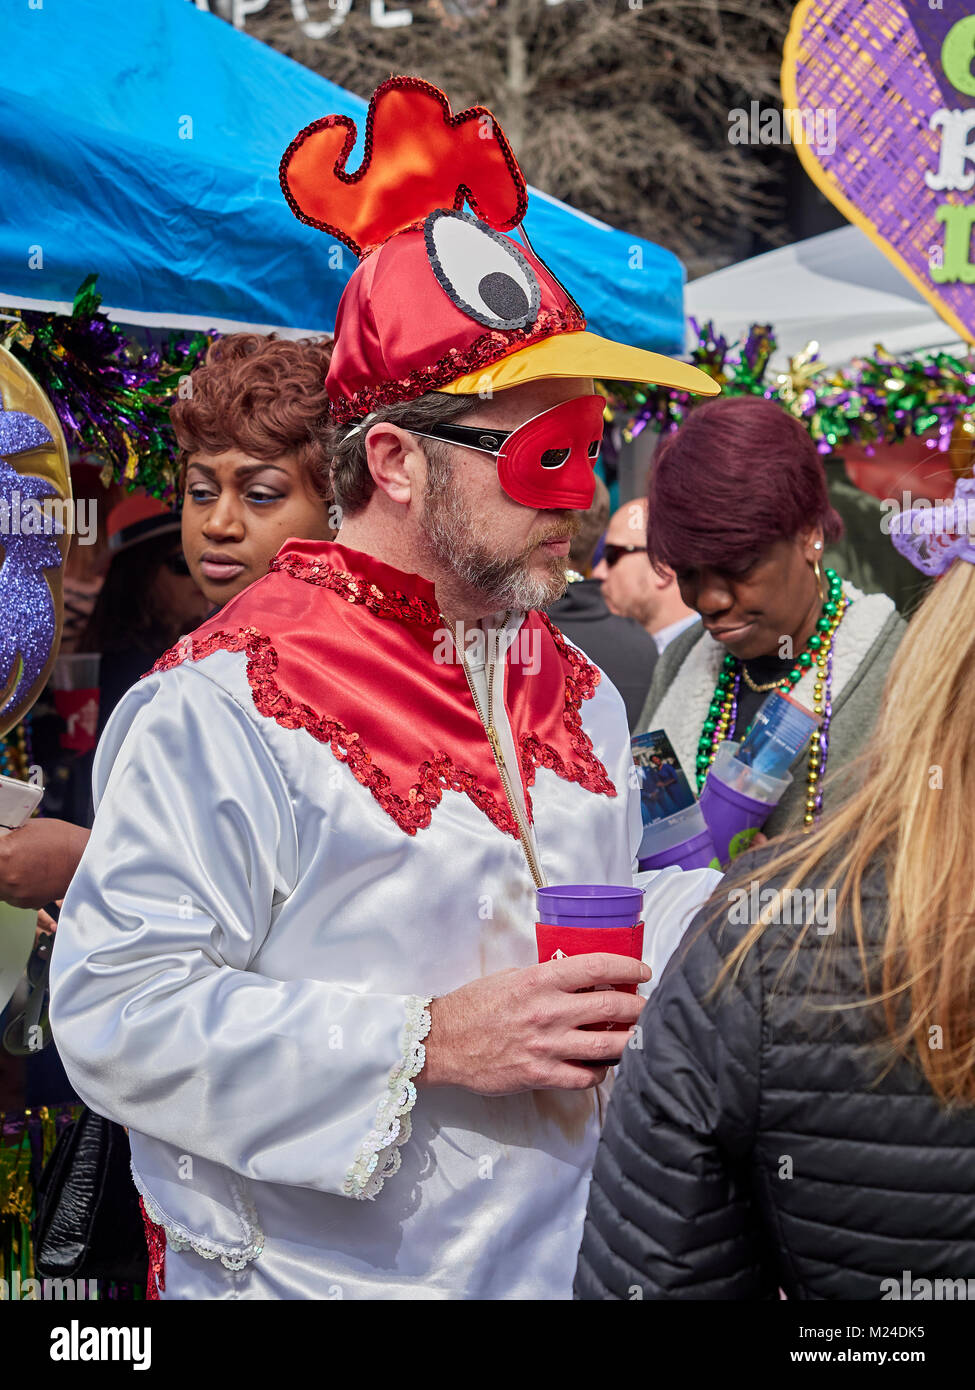 Mann verkleidet in Huhn Kostüm und das Tragen einer Maske auf lokaler Mardi Gras Straße Feier in Montgomery Alabama, Vereinigte Staaten. Stockfoto